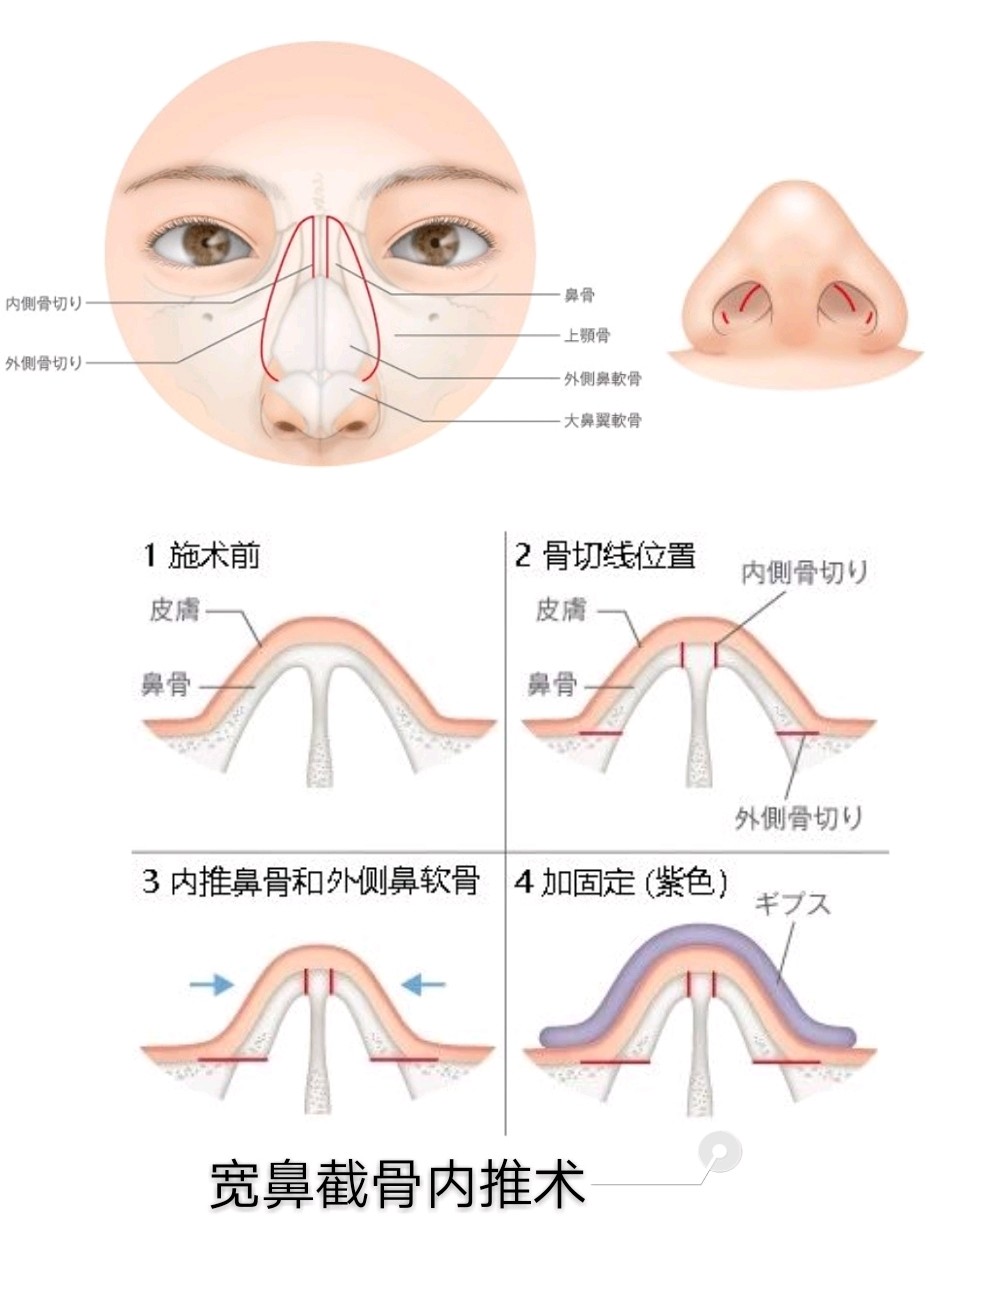 鼻子各部位名称图解图片